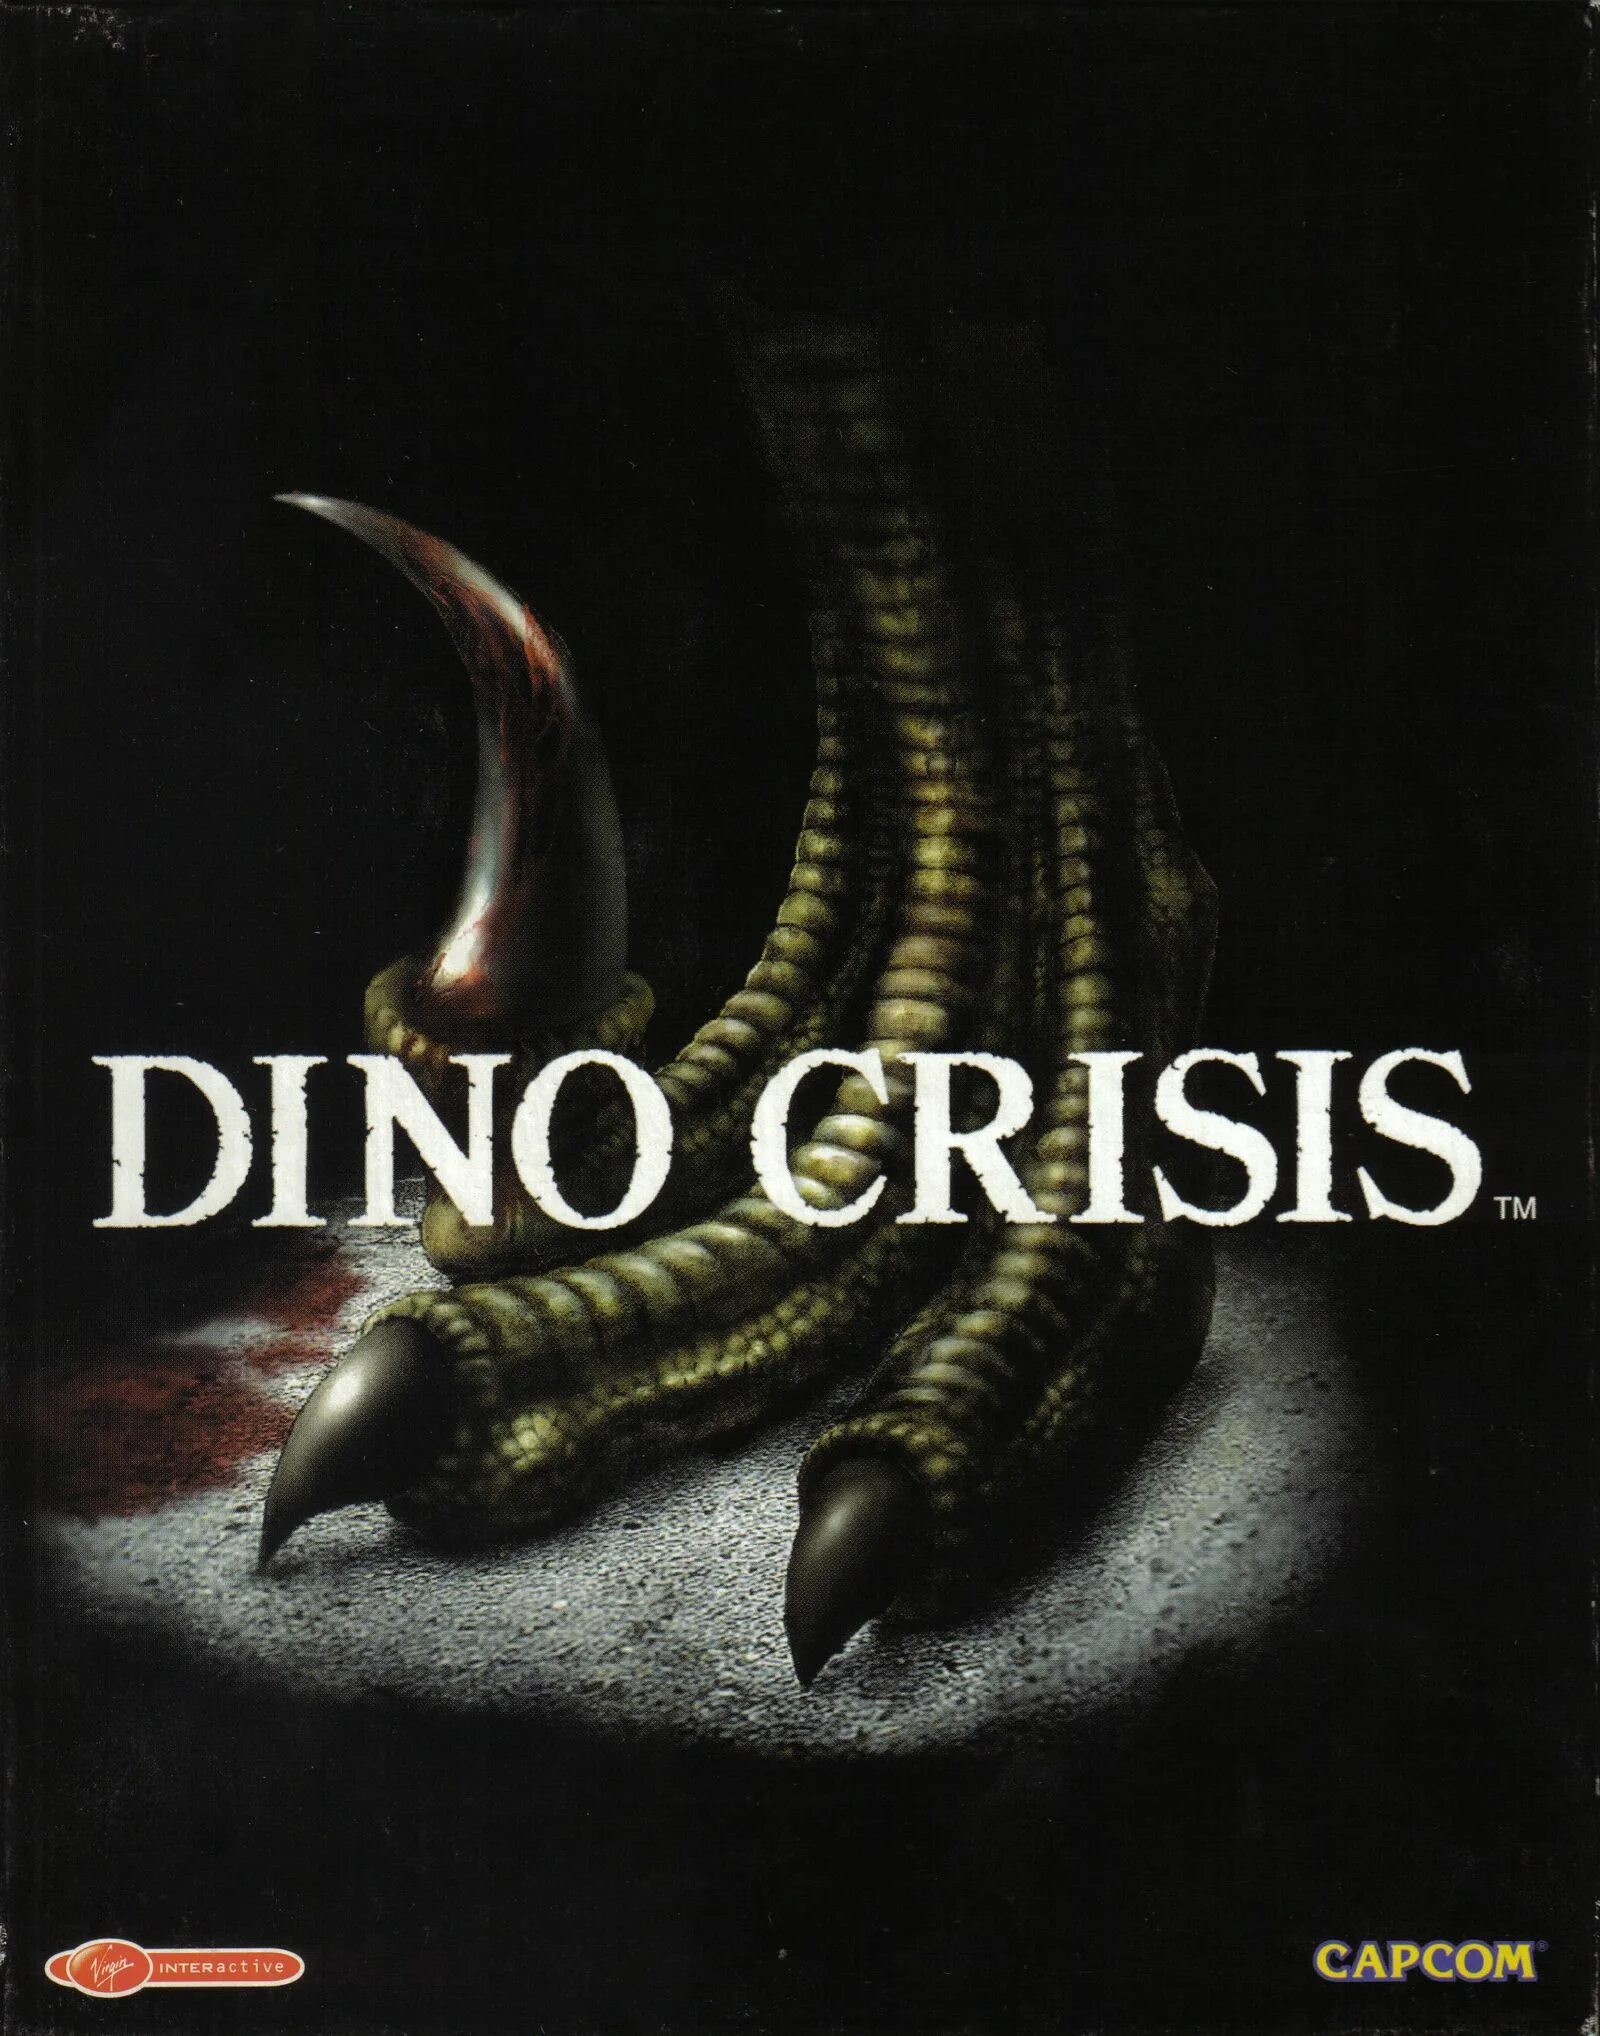 Dino crisis 1. Dino crisis 2 обложка. Dino crisis ps1 обложка. Dino crisis 1 PC. Dino crisis 1 обложка.